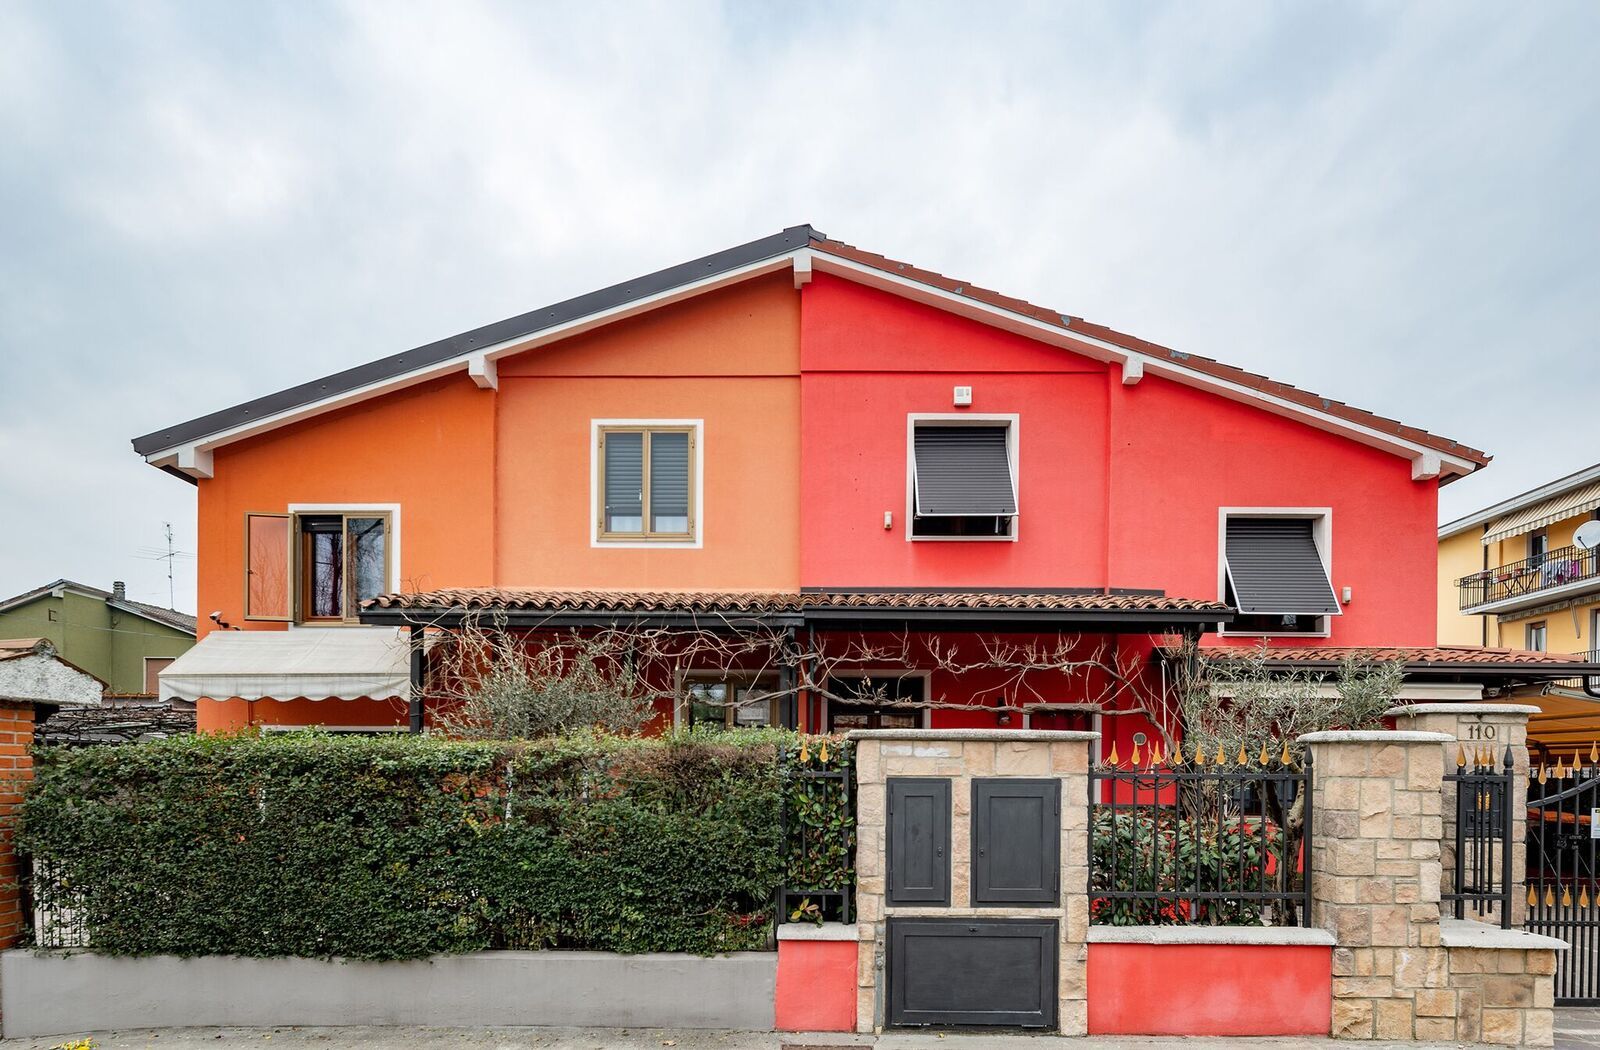 Italian Homes #19, Monica Bonvicini